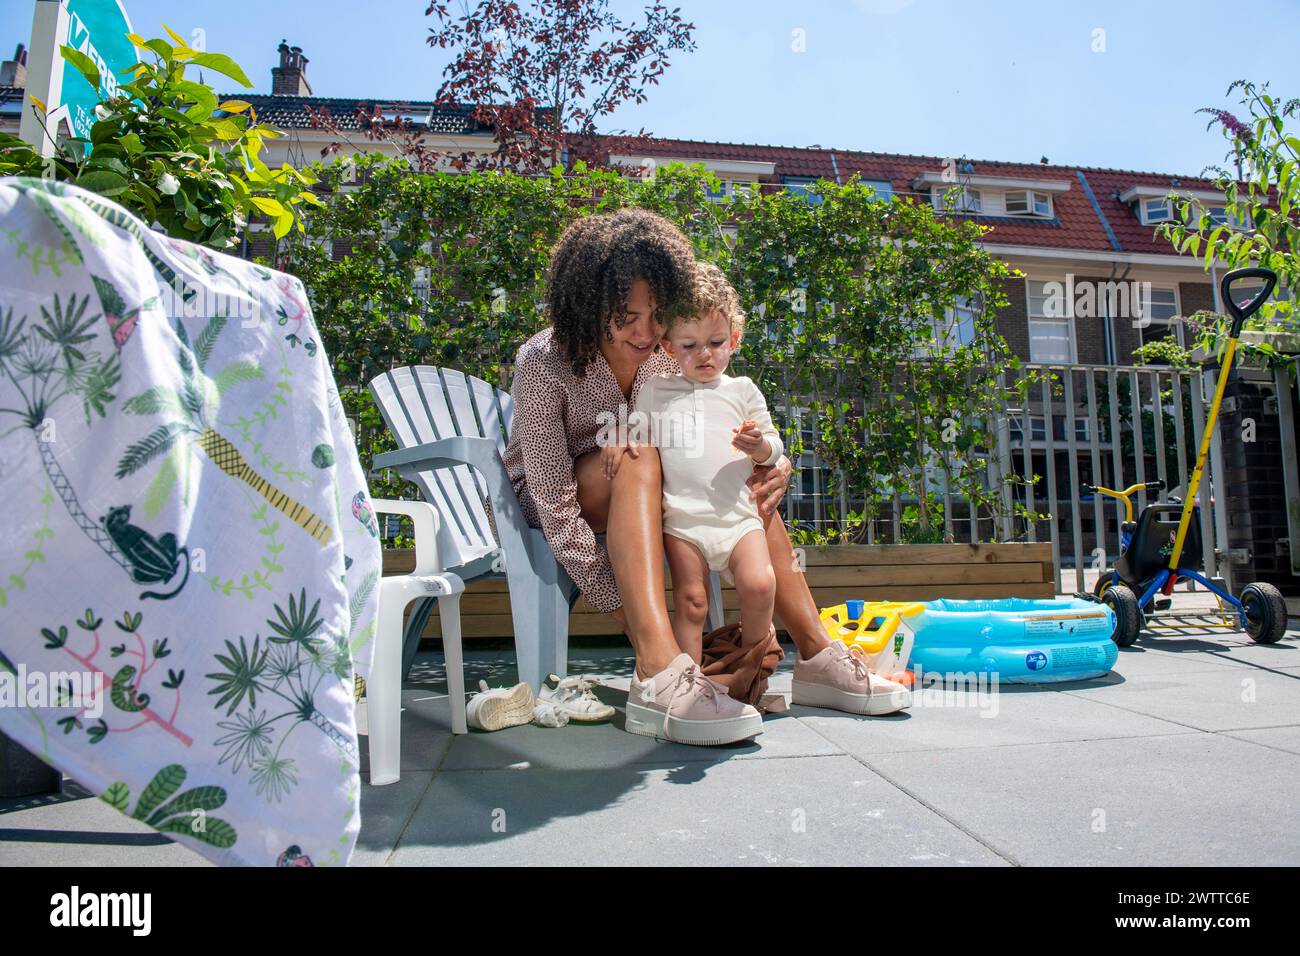 Ein freudiger Moment, als eine Mutter ihrem Kleinen hilft, ein paar Schritte in den sonnigen Hinterhof zu gehen. Stockfoto